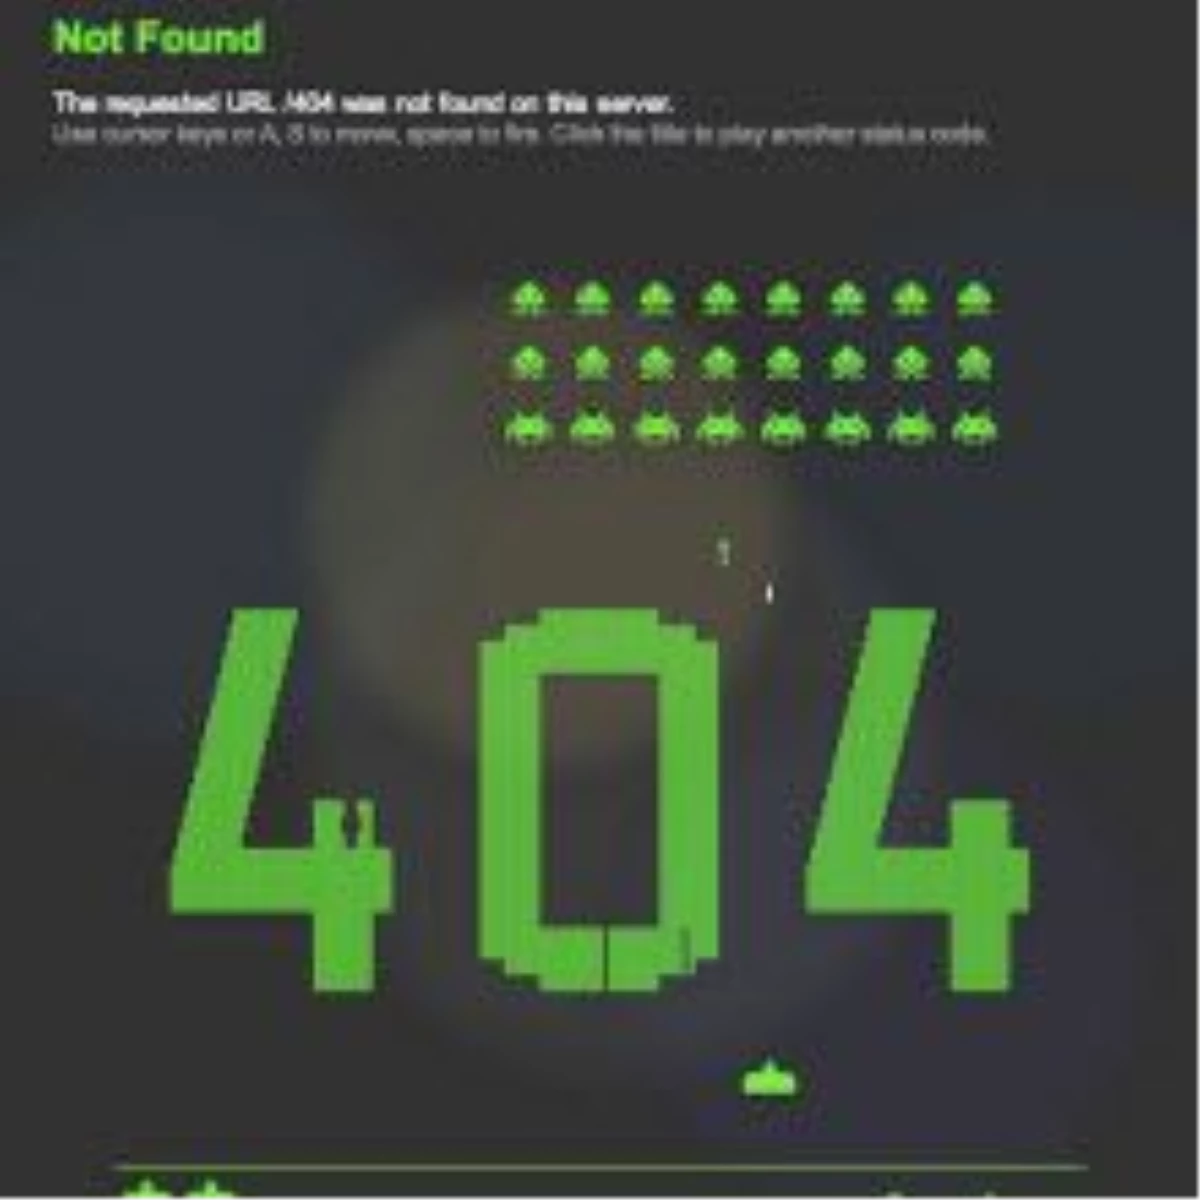 Sonunda hepimiz "404" verdik!